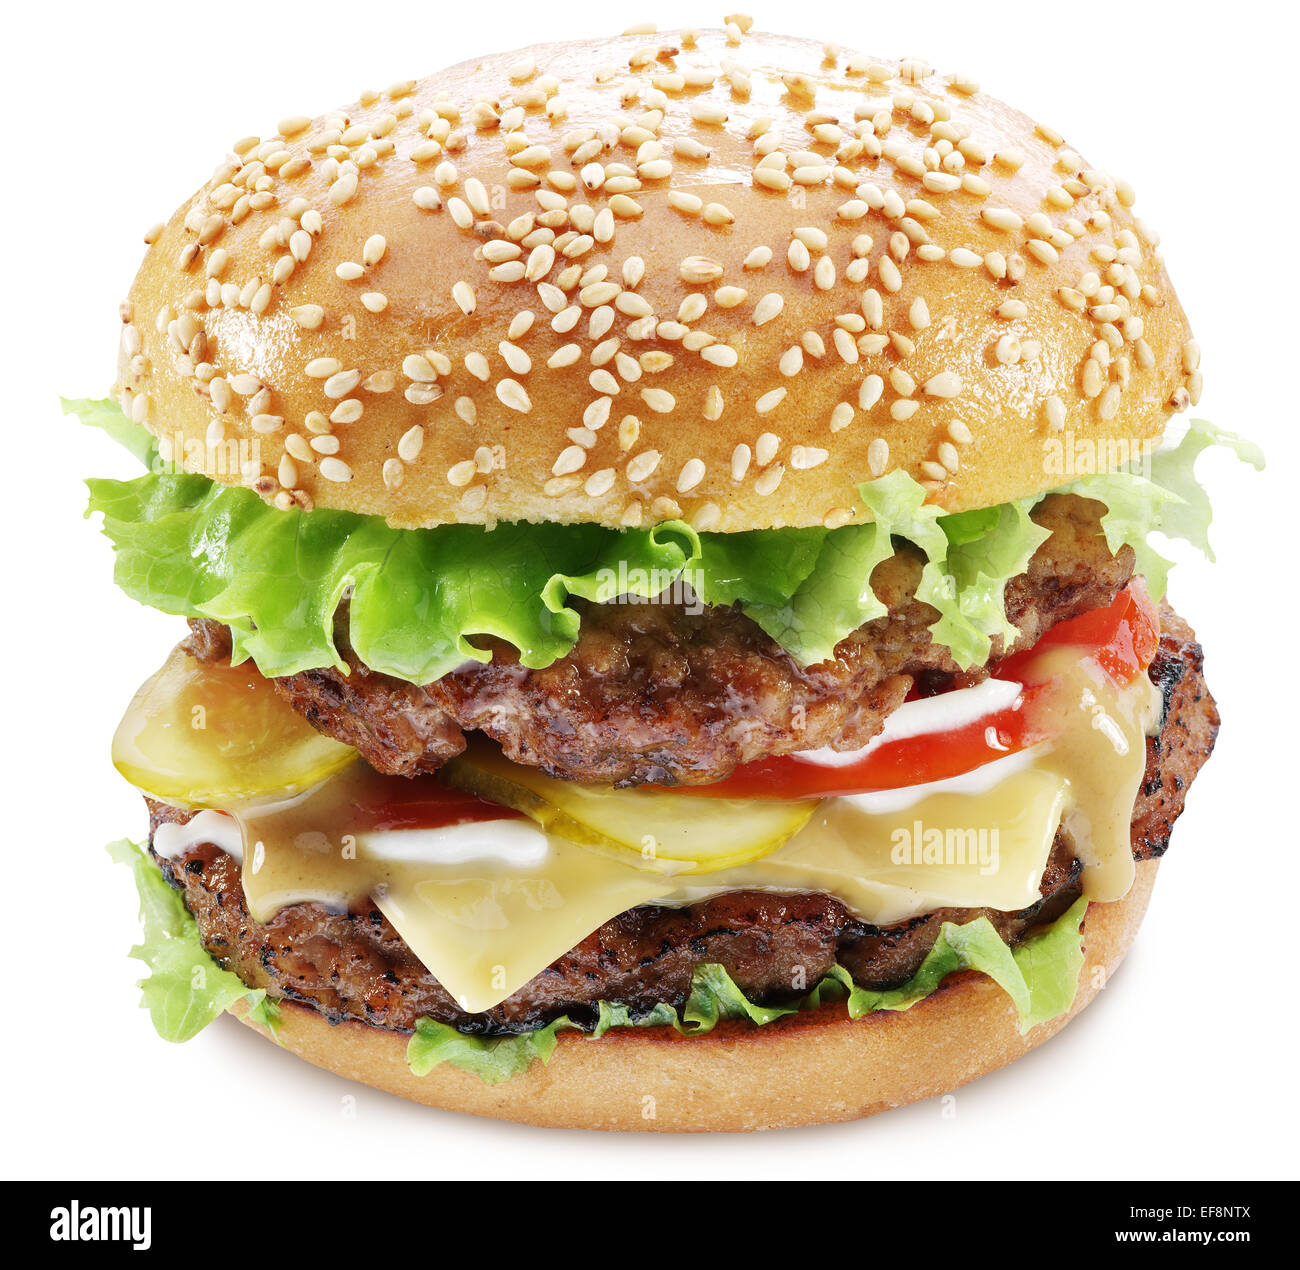 Hamburger isolated on a white background. Stock Photo